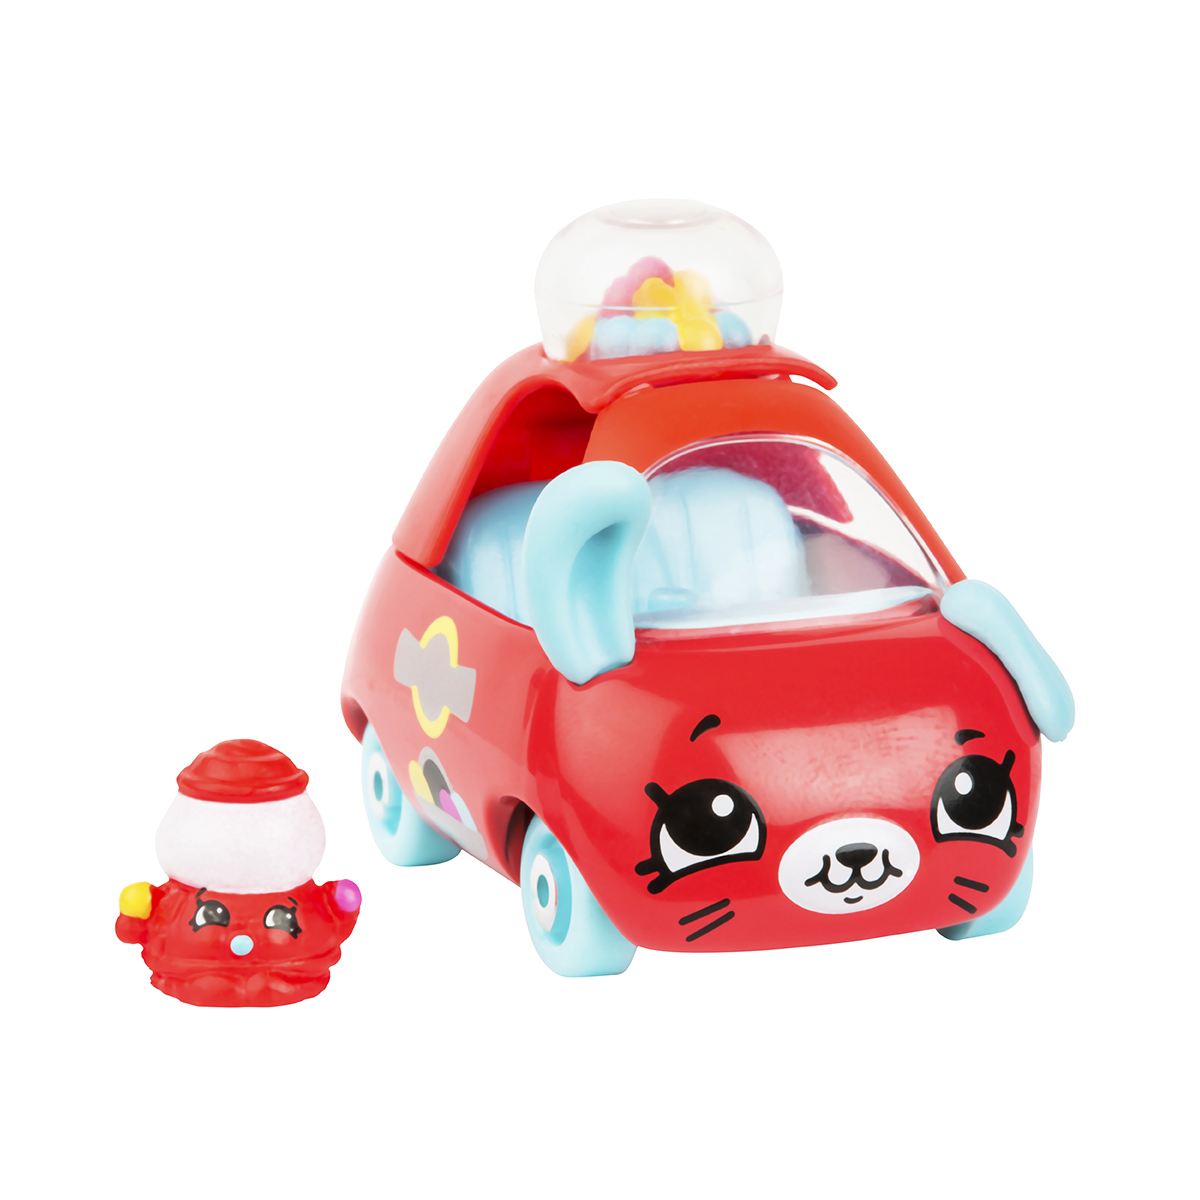 Мини-машинка Cutie Cars s3 - Бабли-кар (с мини-шопкинсом) (57115)